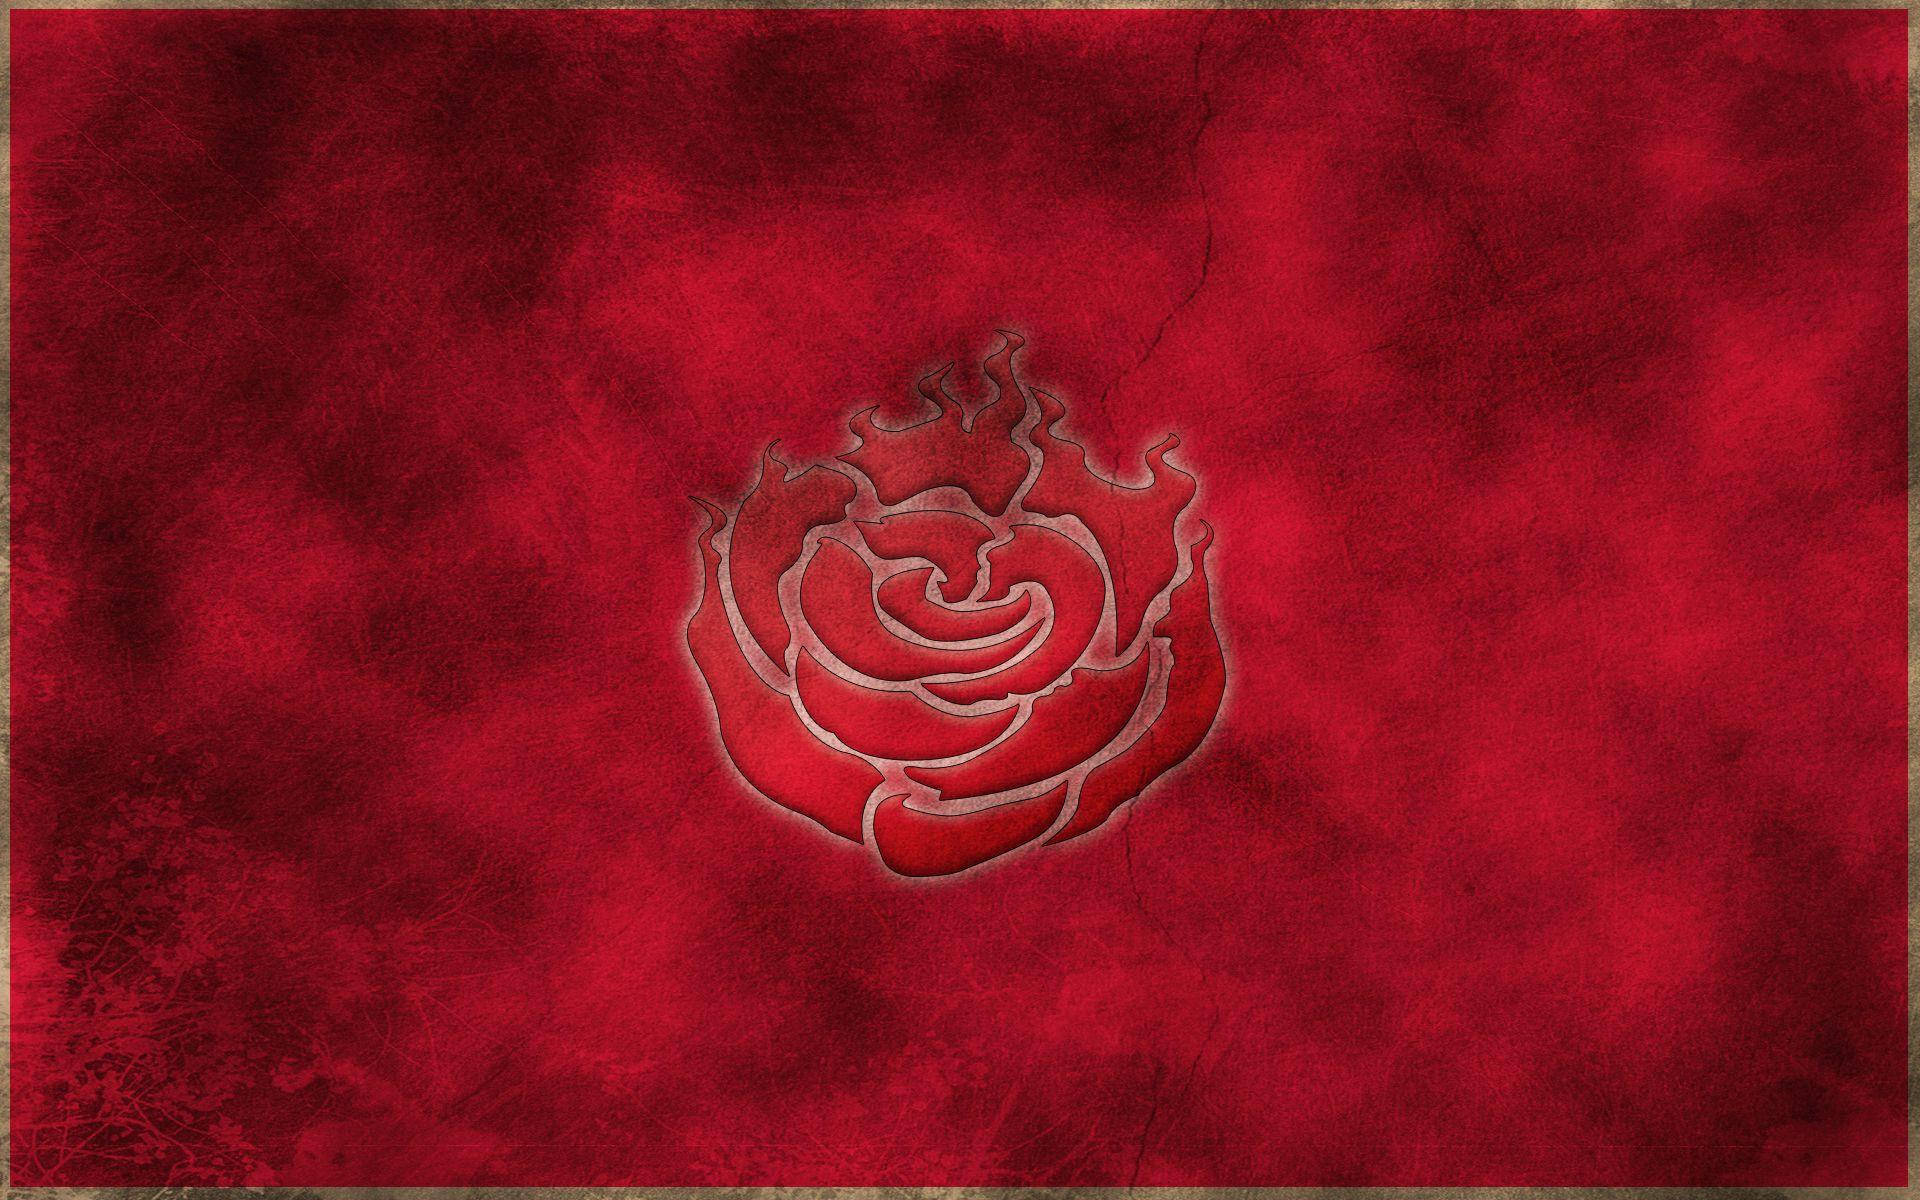 Anime Symbols Rwby Ruby Rose Emblem Red Aesthetic Background